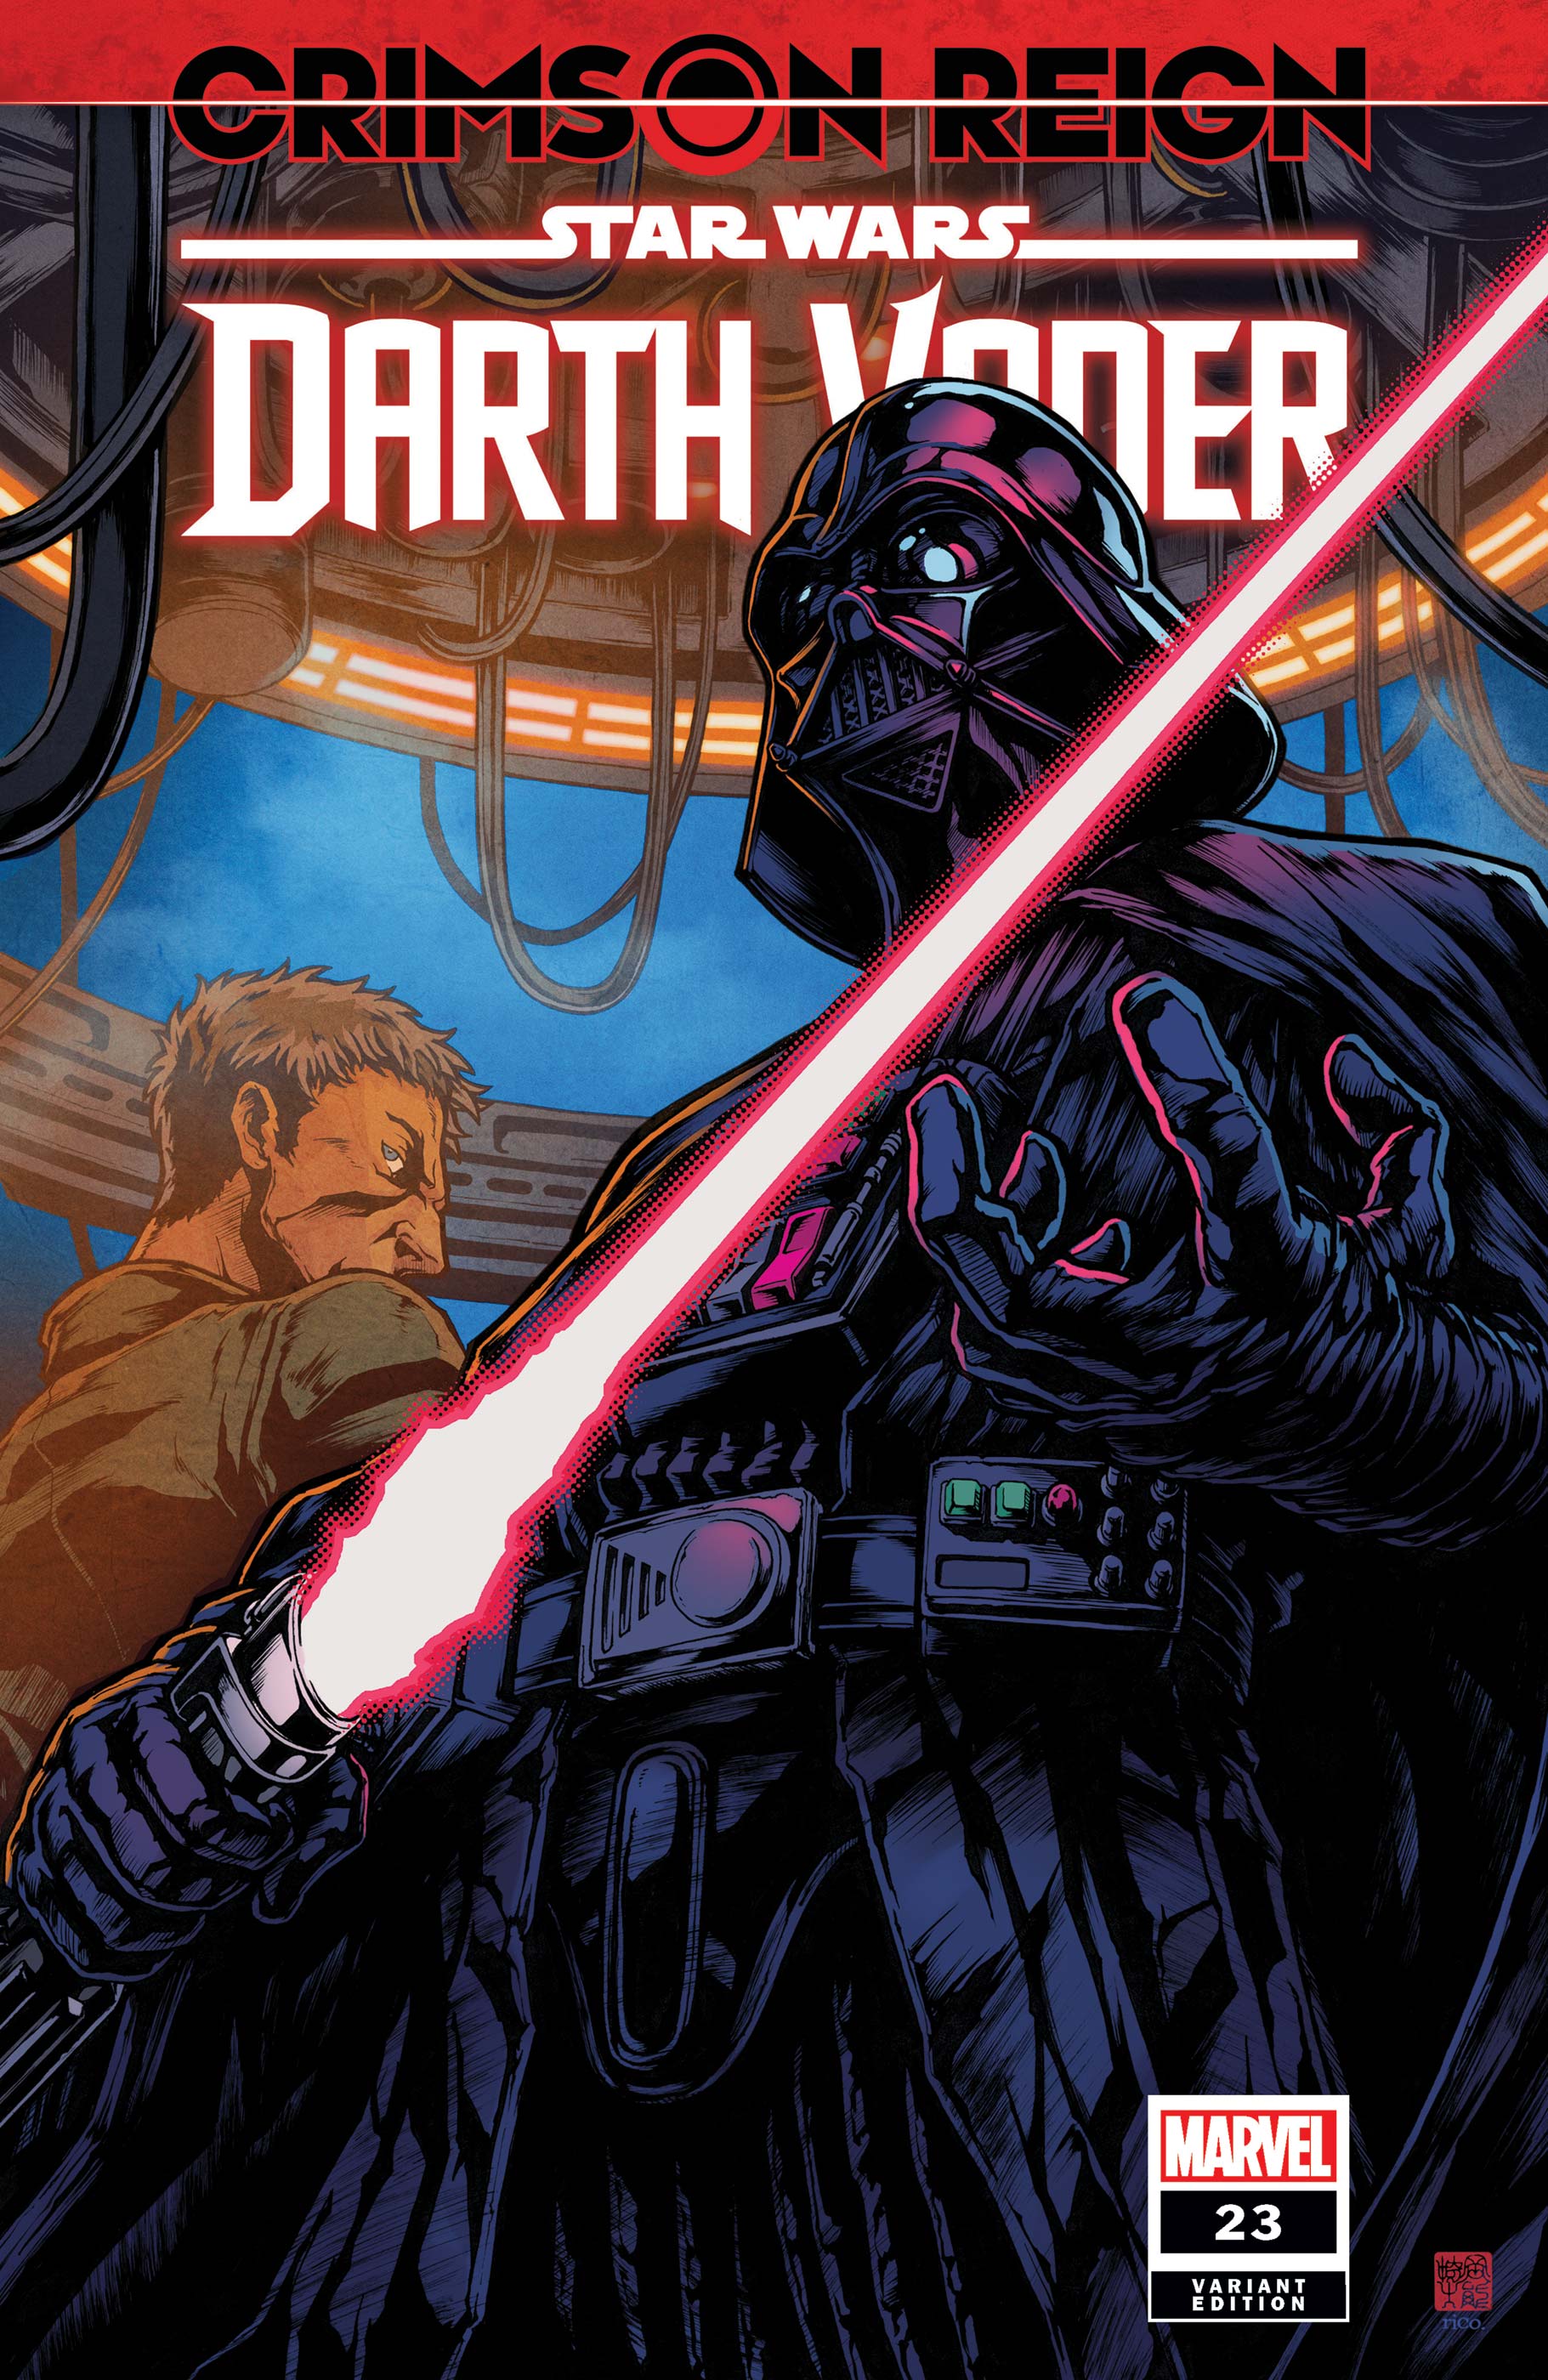 Star Wars: Darth Vader (2020) #23 (Variant)